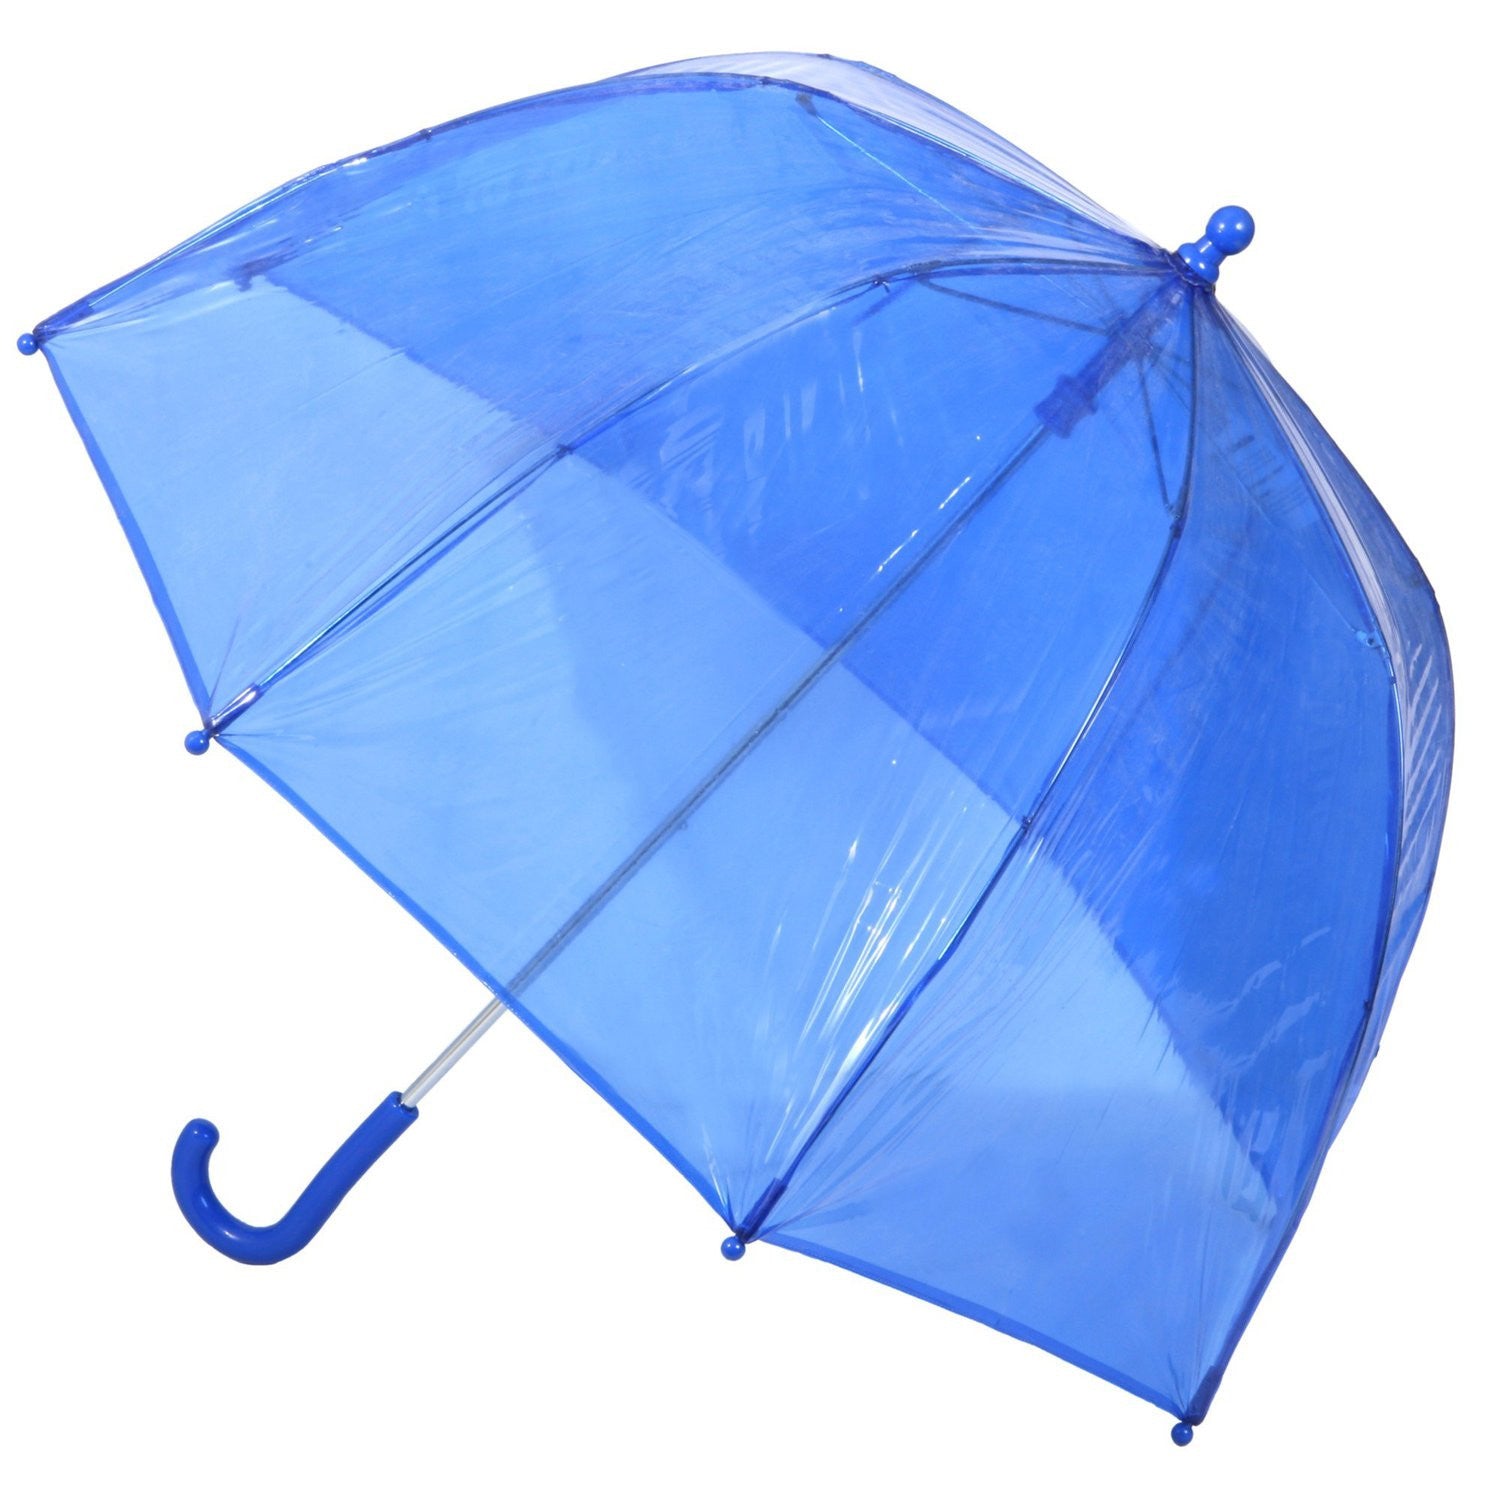 Totes Bubble Umbrella - Clear